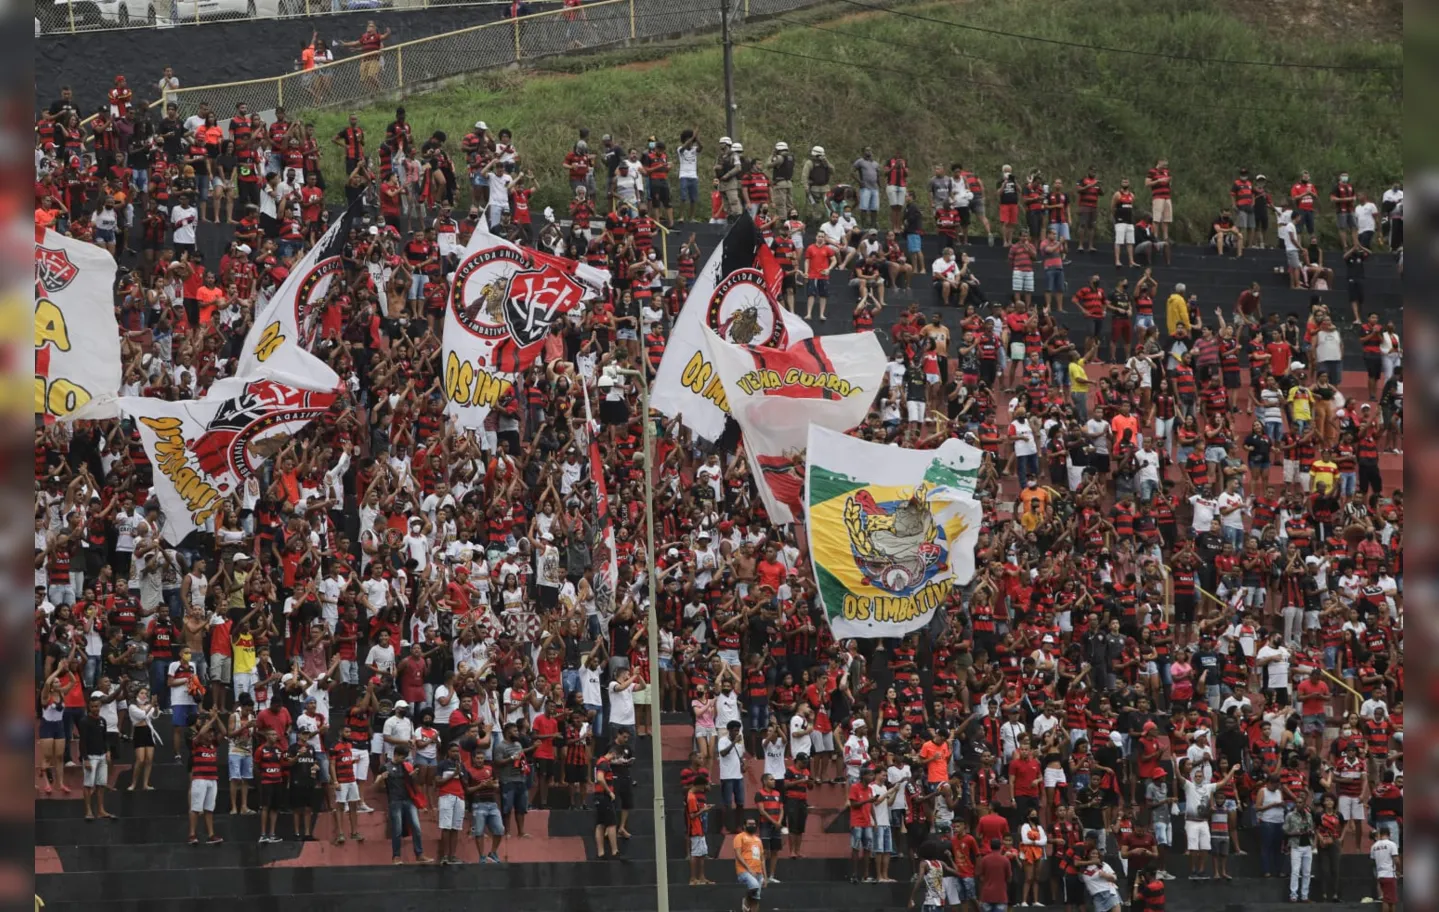 Estádios na Bahia tem autorização para 70% da capacidade | Foto: Uendel Galter / Ag. A TARDE